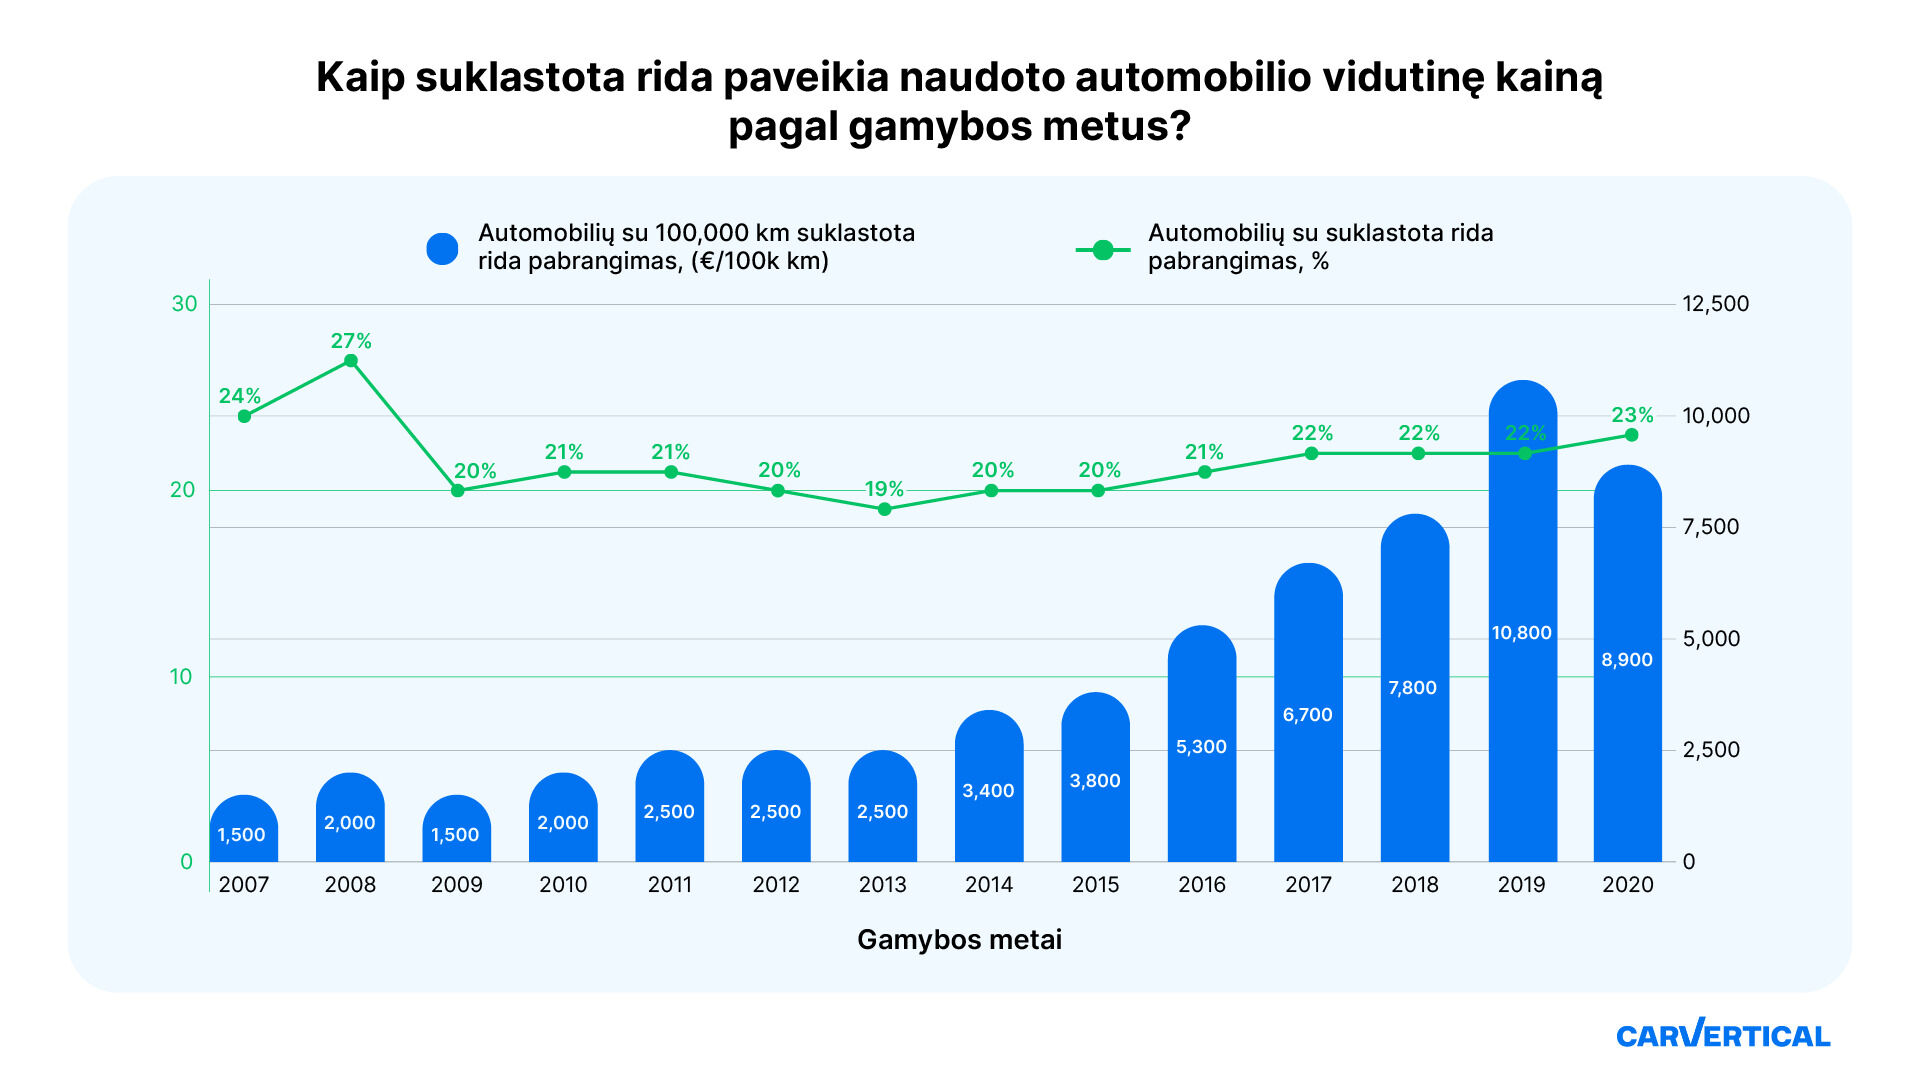 Suklastota rida automobilio kainą Lietuvoje išpučia net ketvirtadaliu foto 2